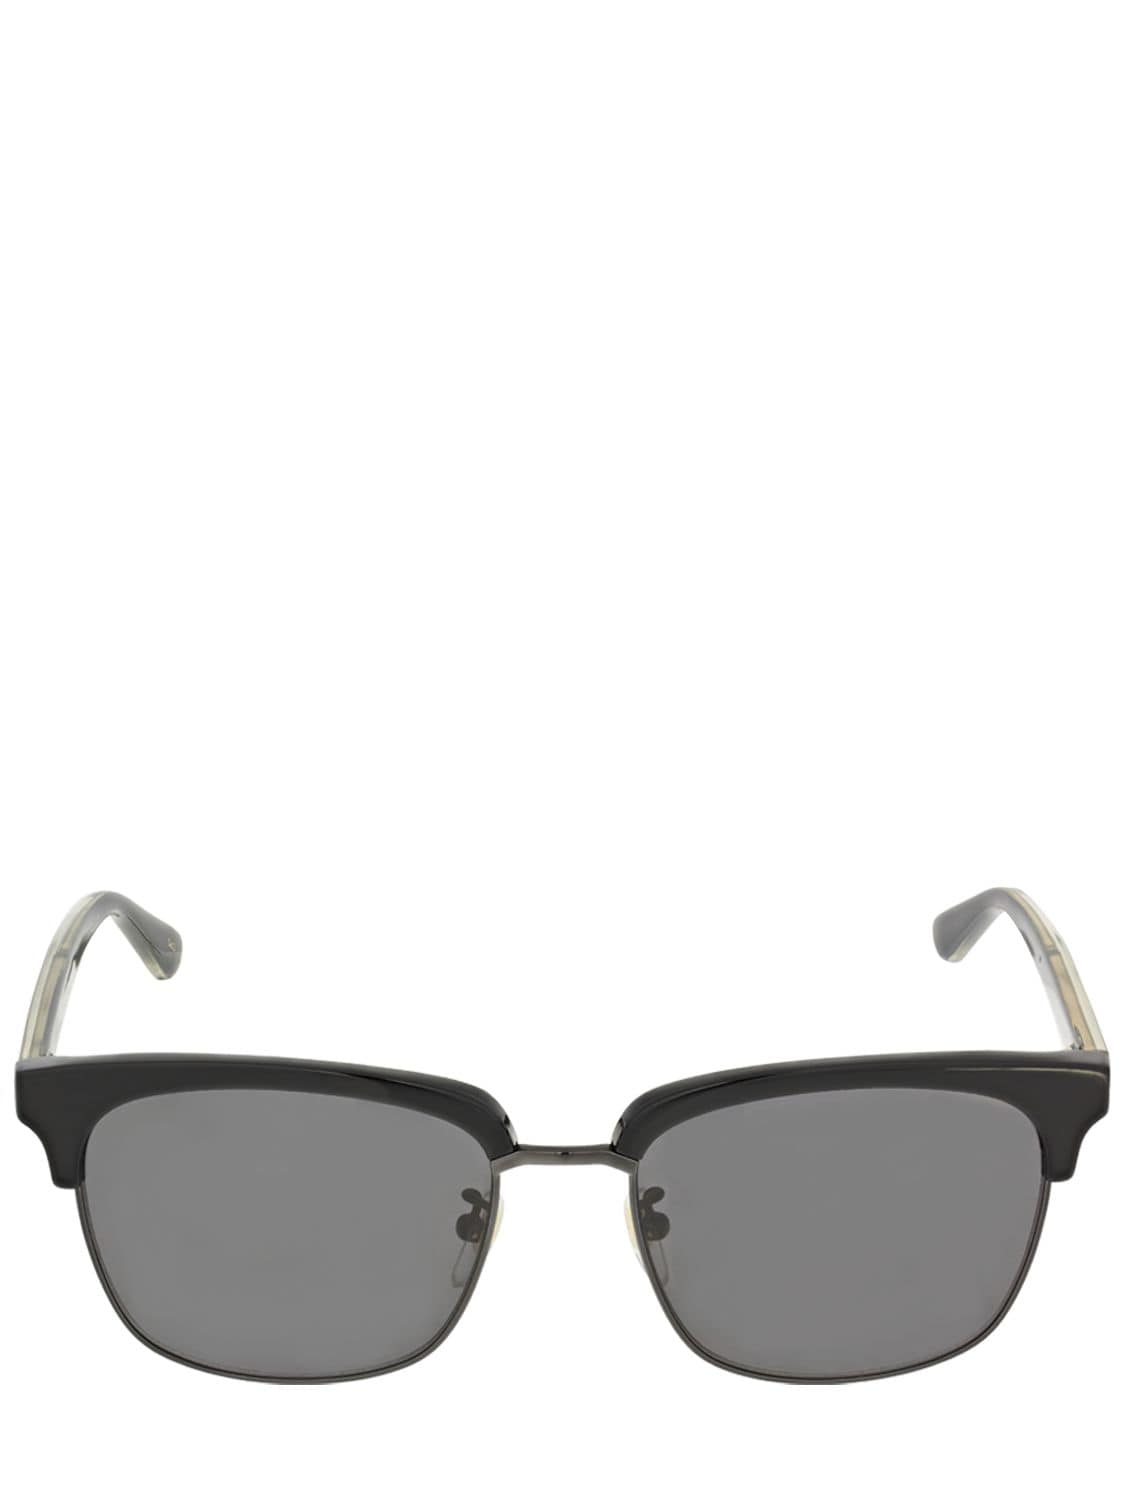 Image of Round Metal & Acetate Sunglasses